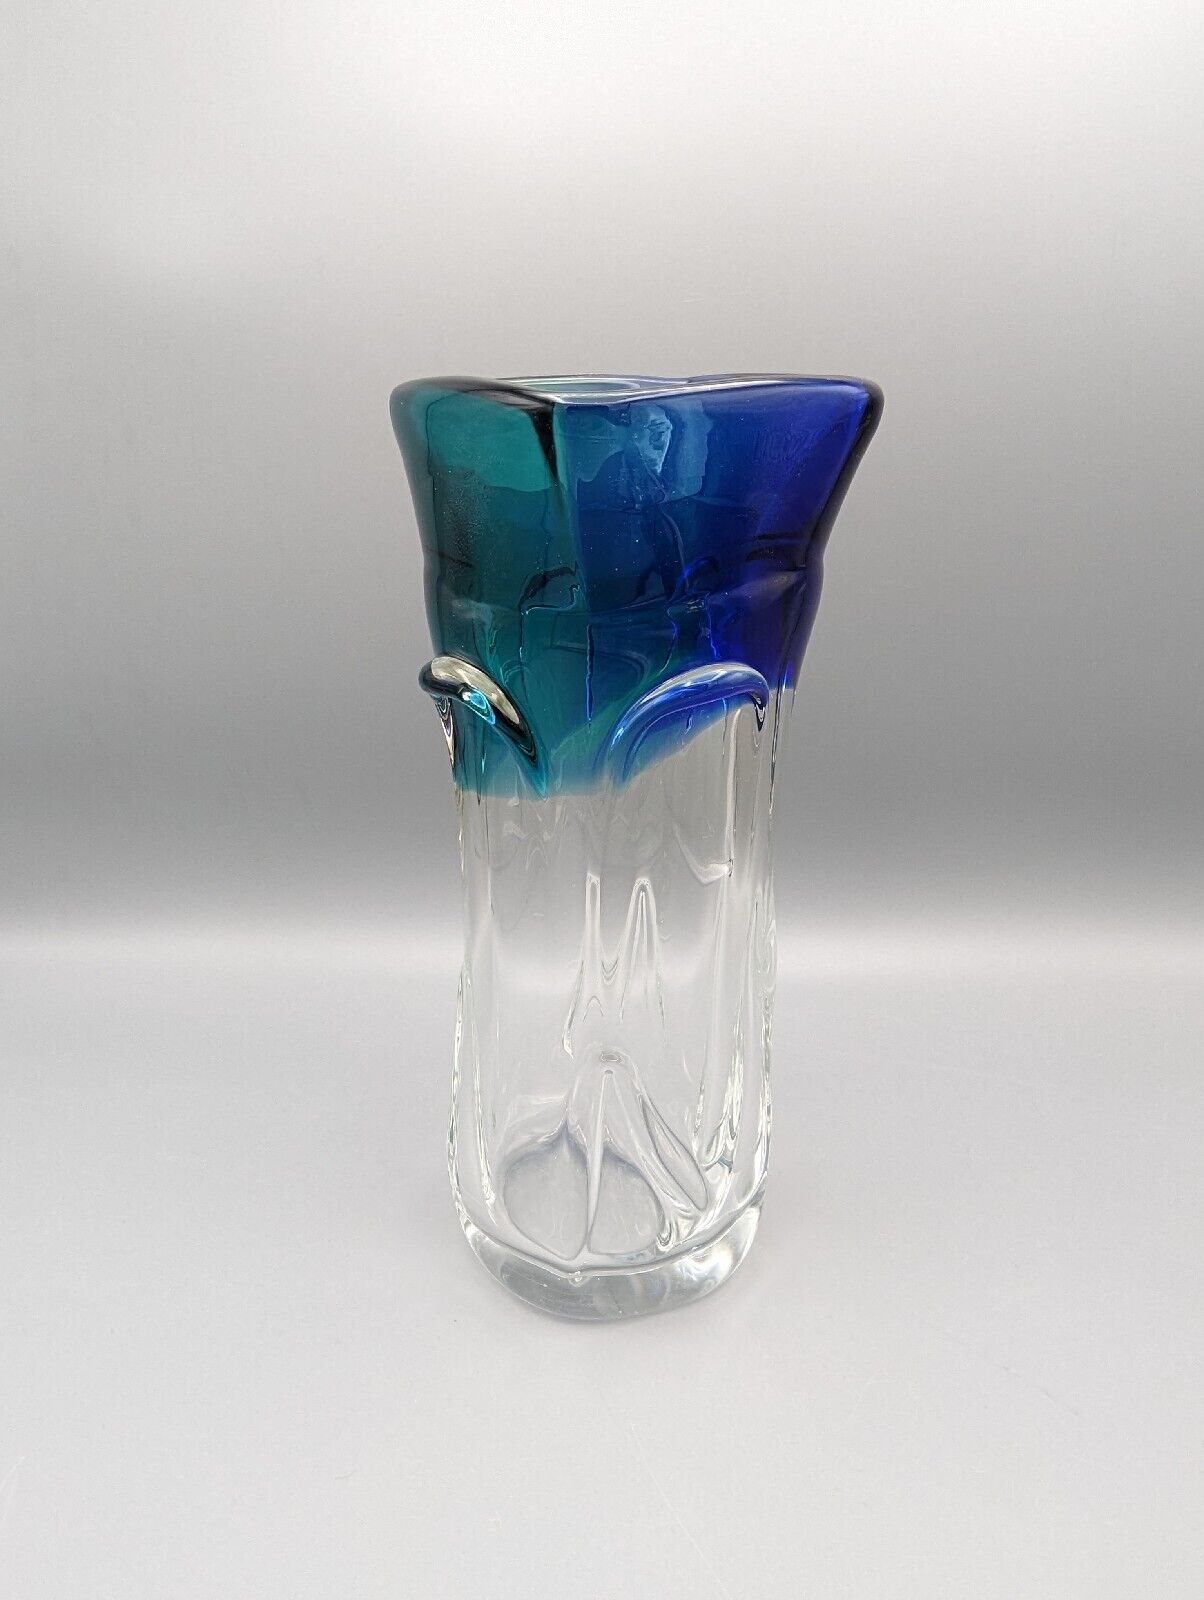 ✨ Vintage Chribska Bohemian Czech Art Glass Vase Blue Green Teal Blown Glass